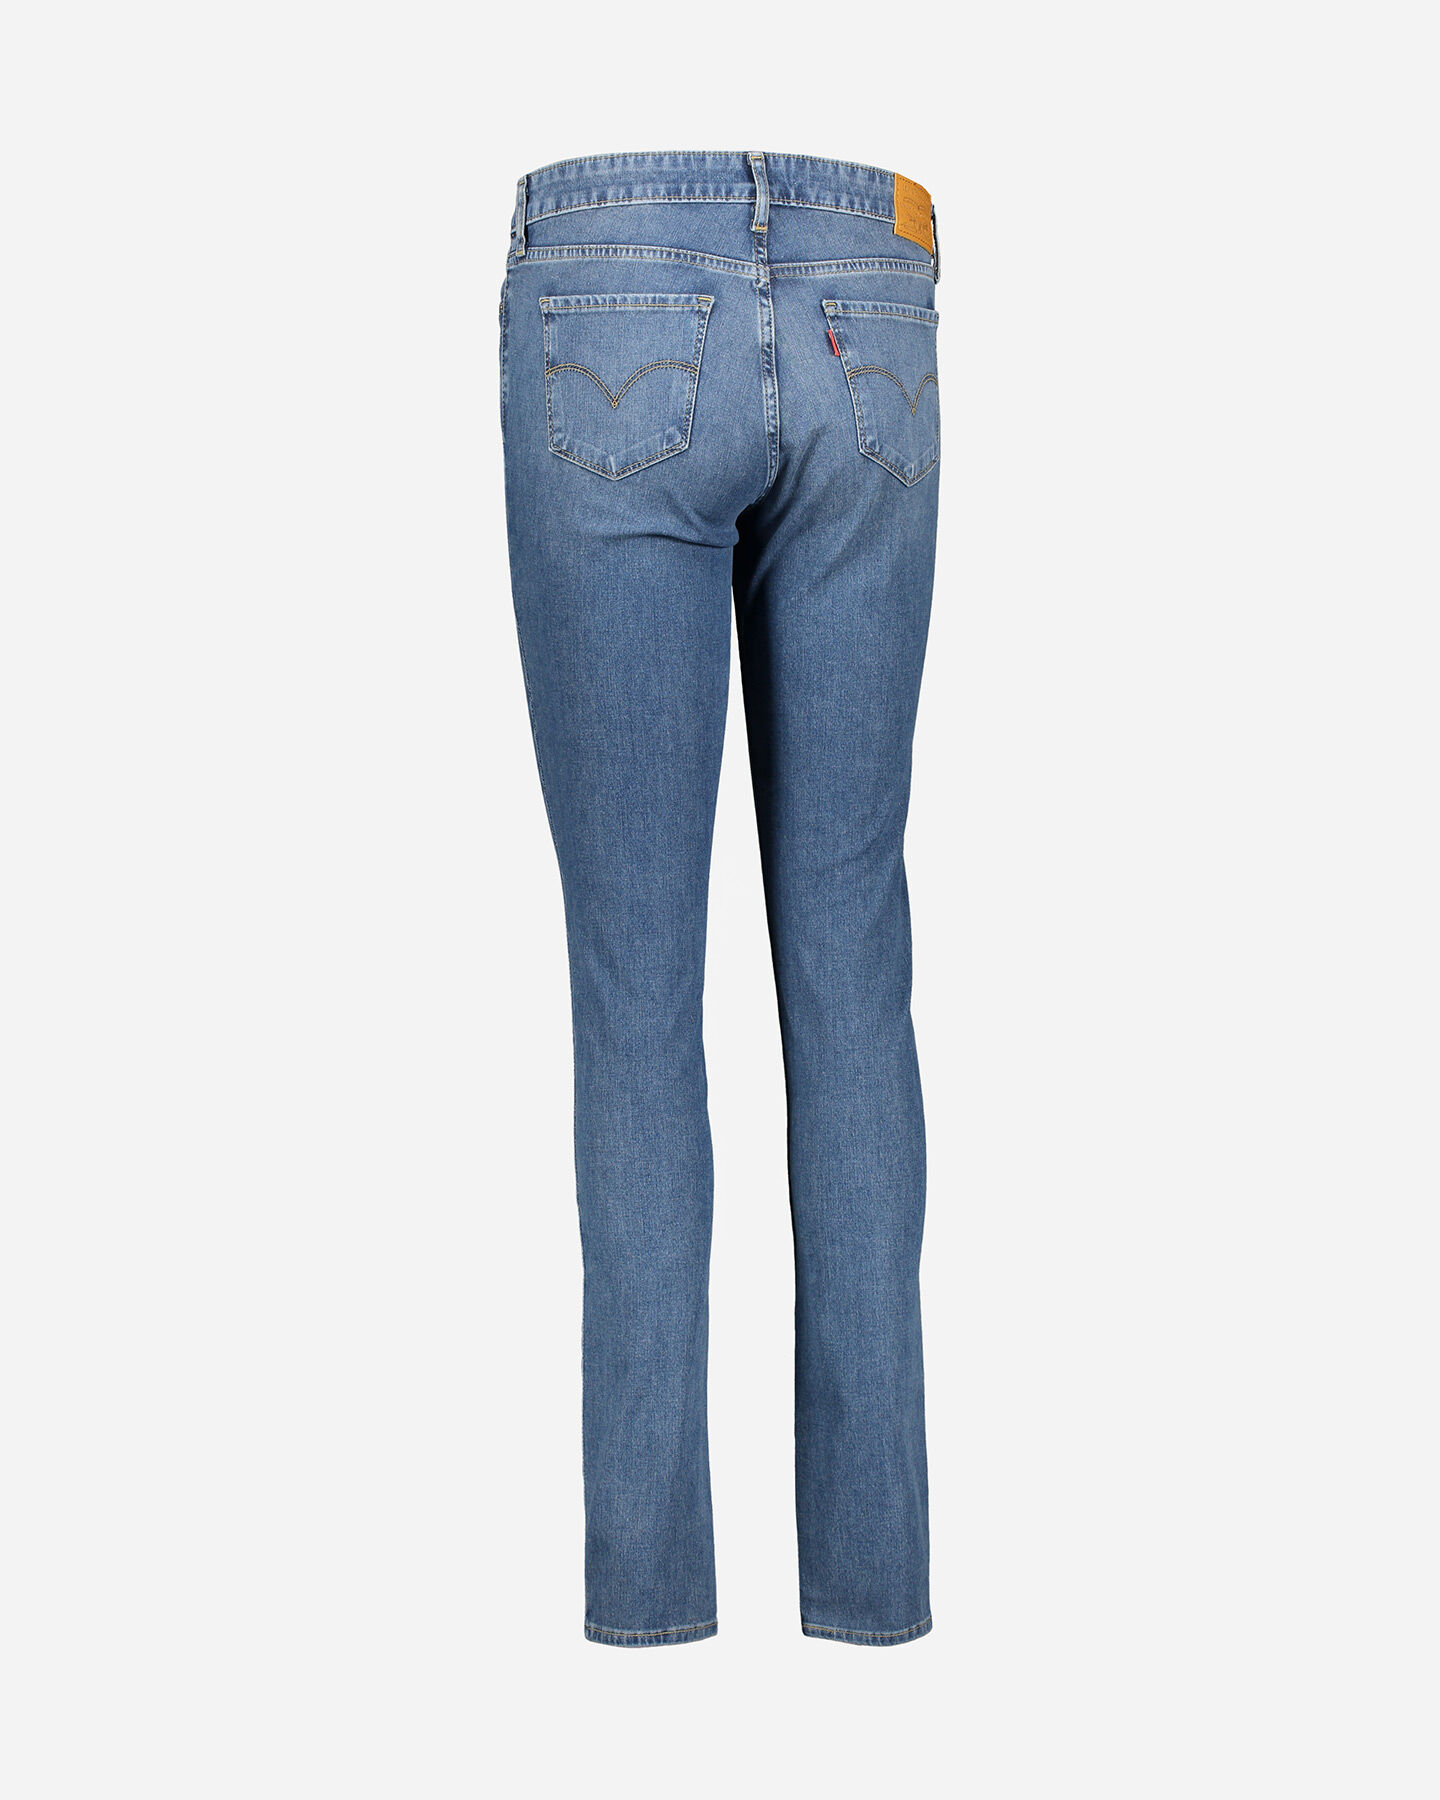  Jeans LEVI'S 711 SKINNY W S4077781|0411|26 scatto 5